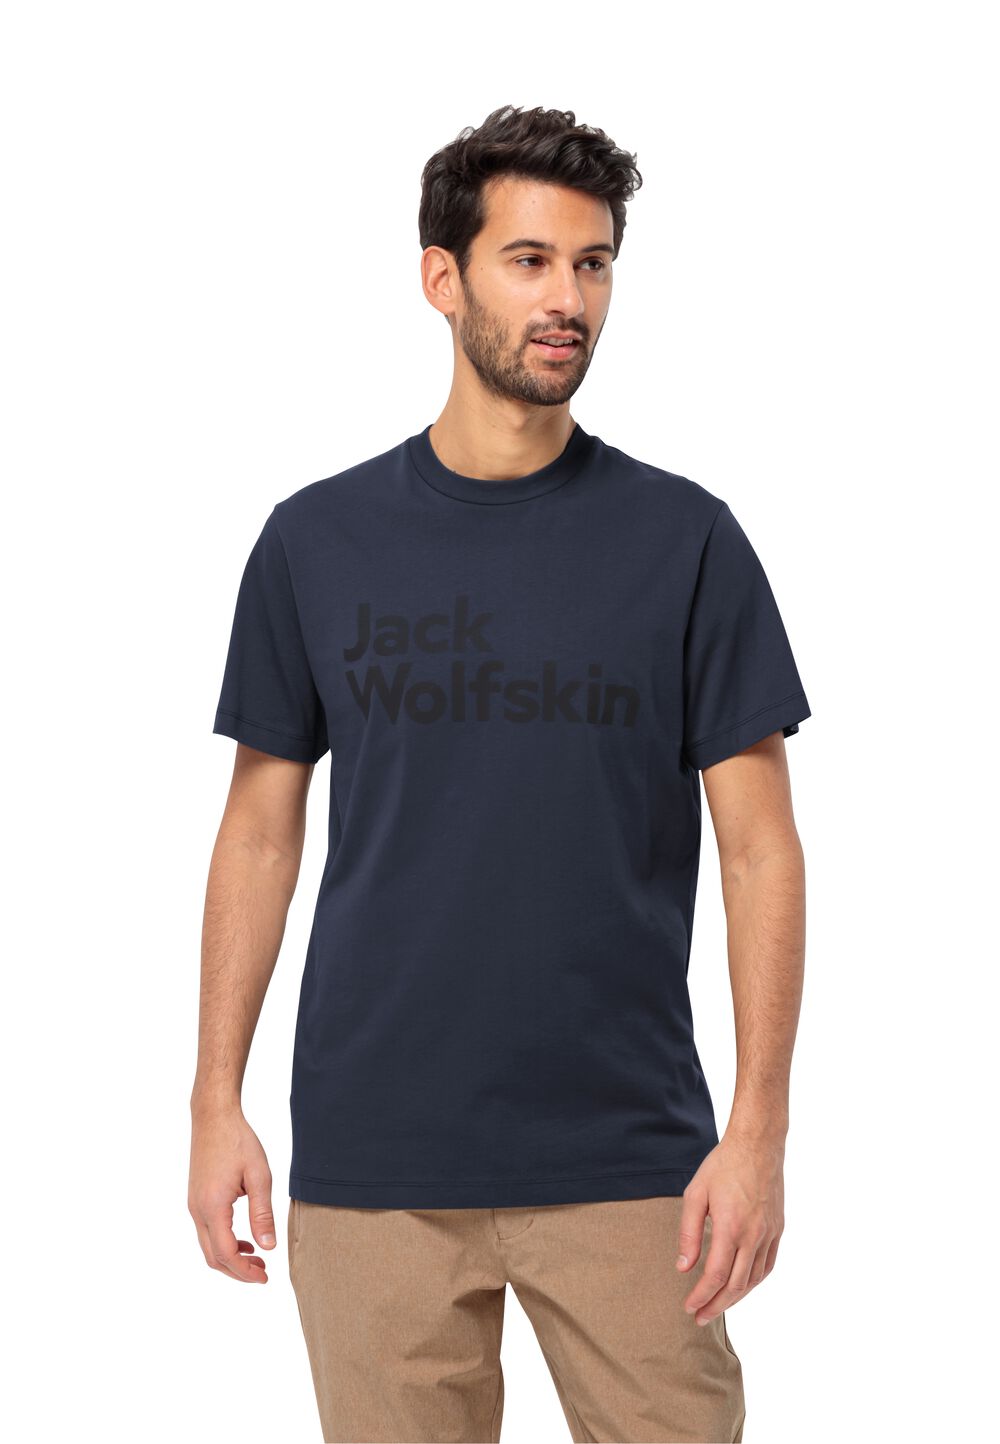 Jack Wolfskin T-Shirt aus Bio-Baumwolle Herren Essential Logo T-Shirt Men XXL blau night blue von Jack Wolfskin